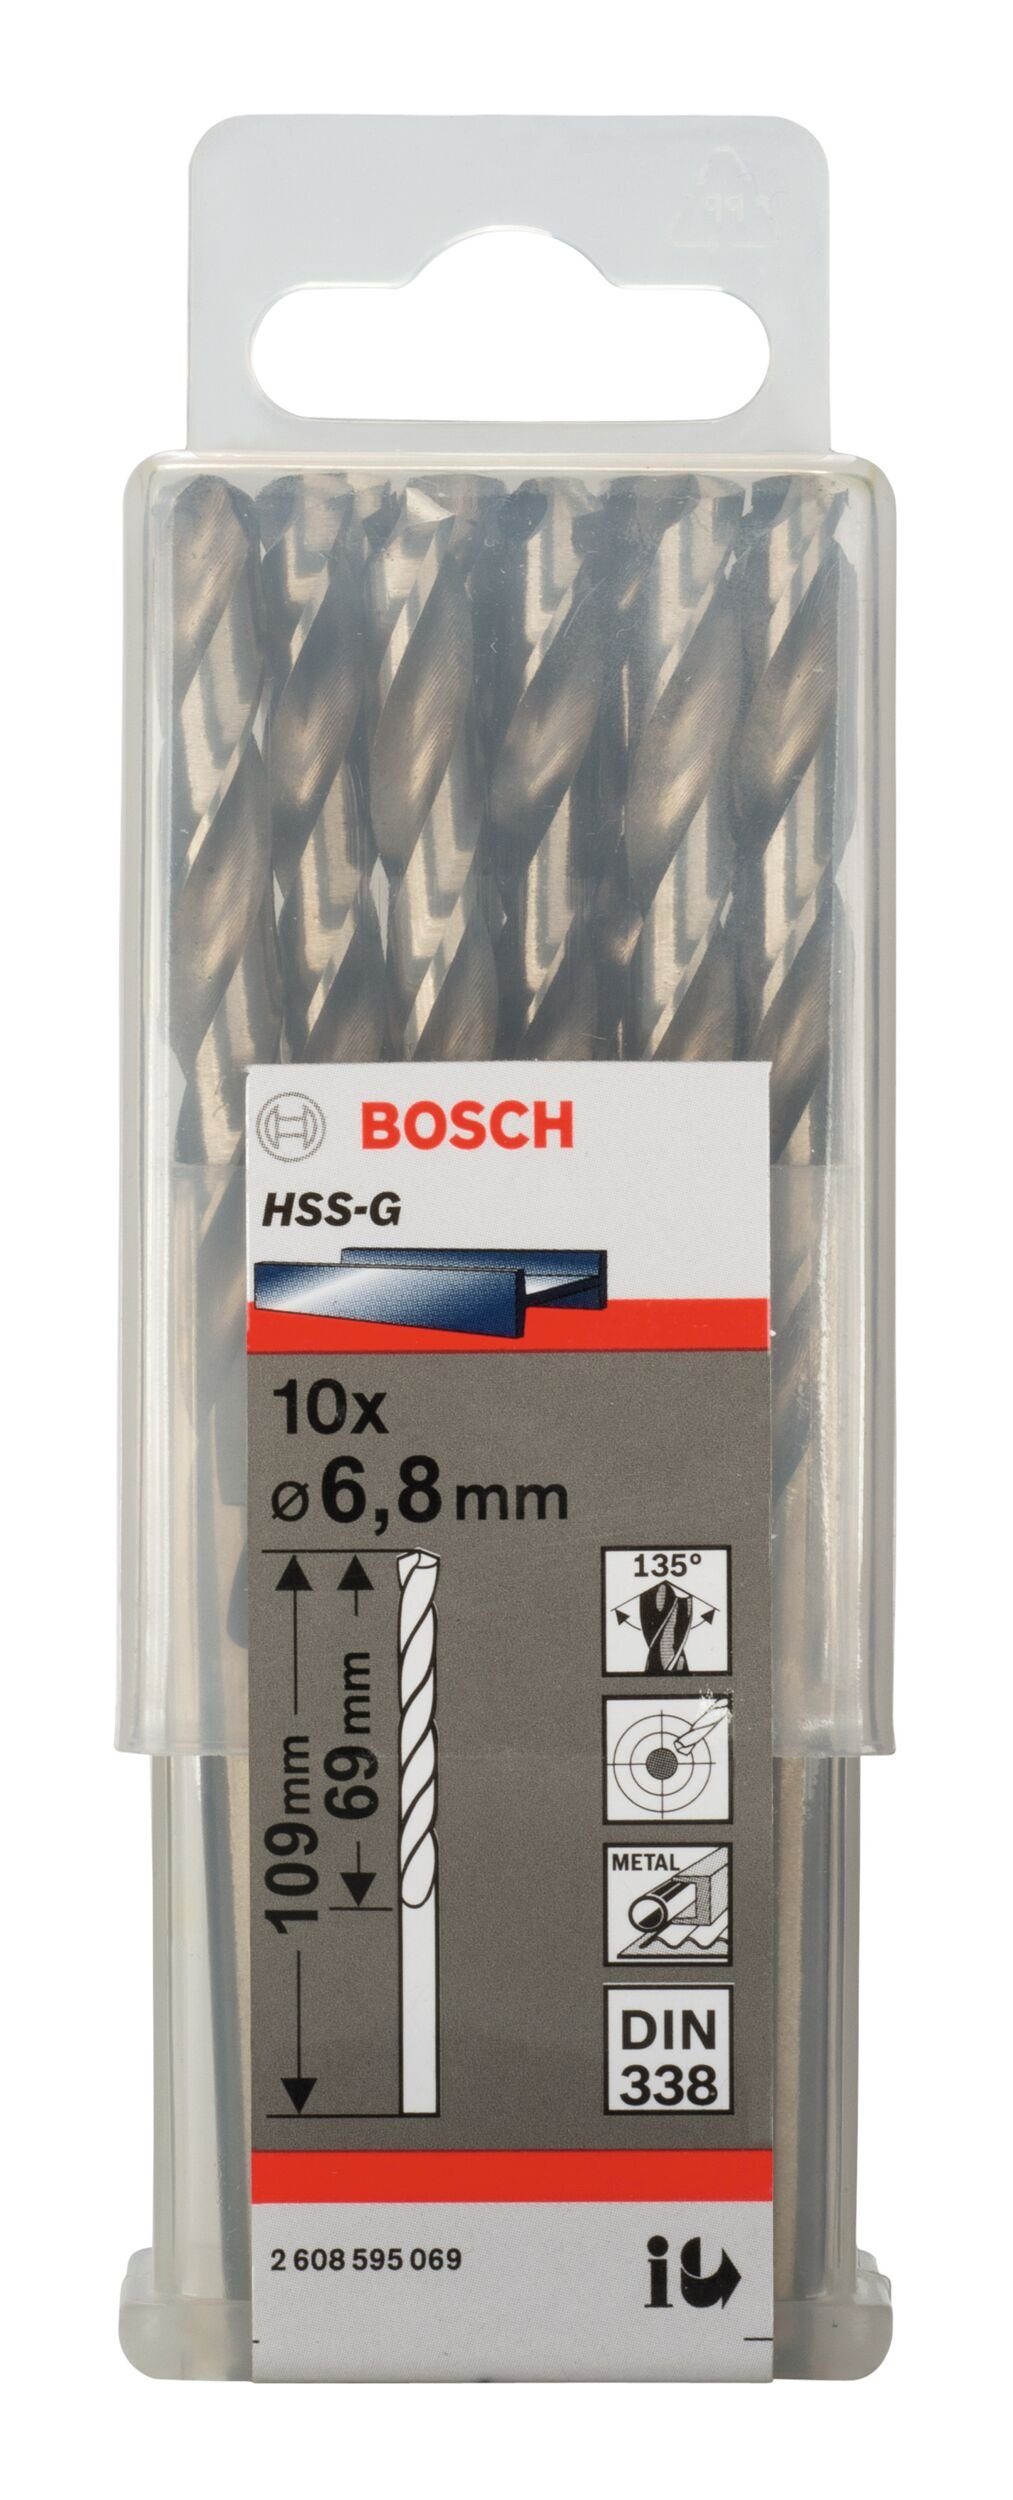 x 109 (DIN 69 (10 BOSCH mm x 10er-Pack Metallbohrer, 338) Stück), - HSS-G - 6,8